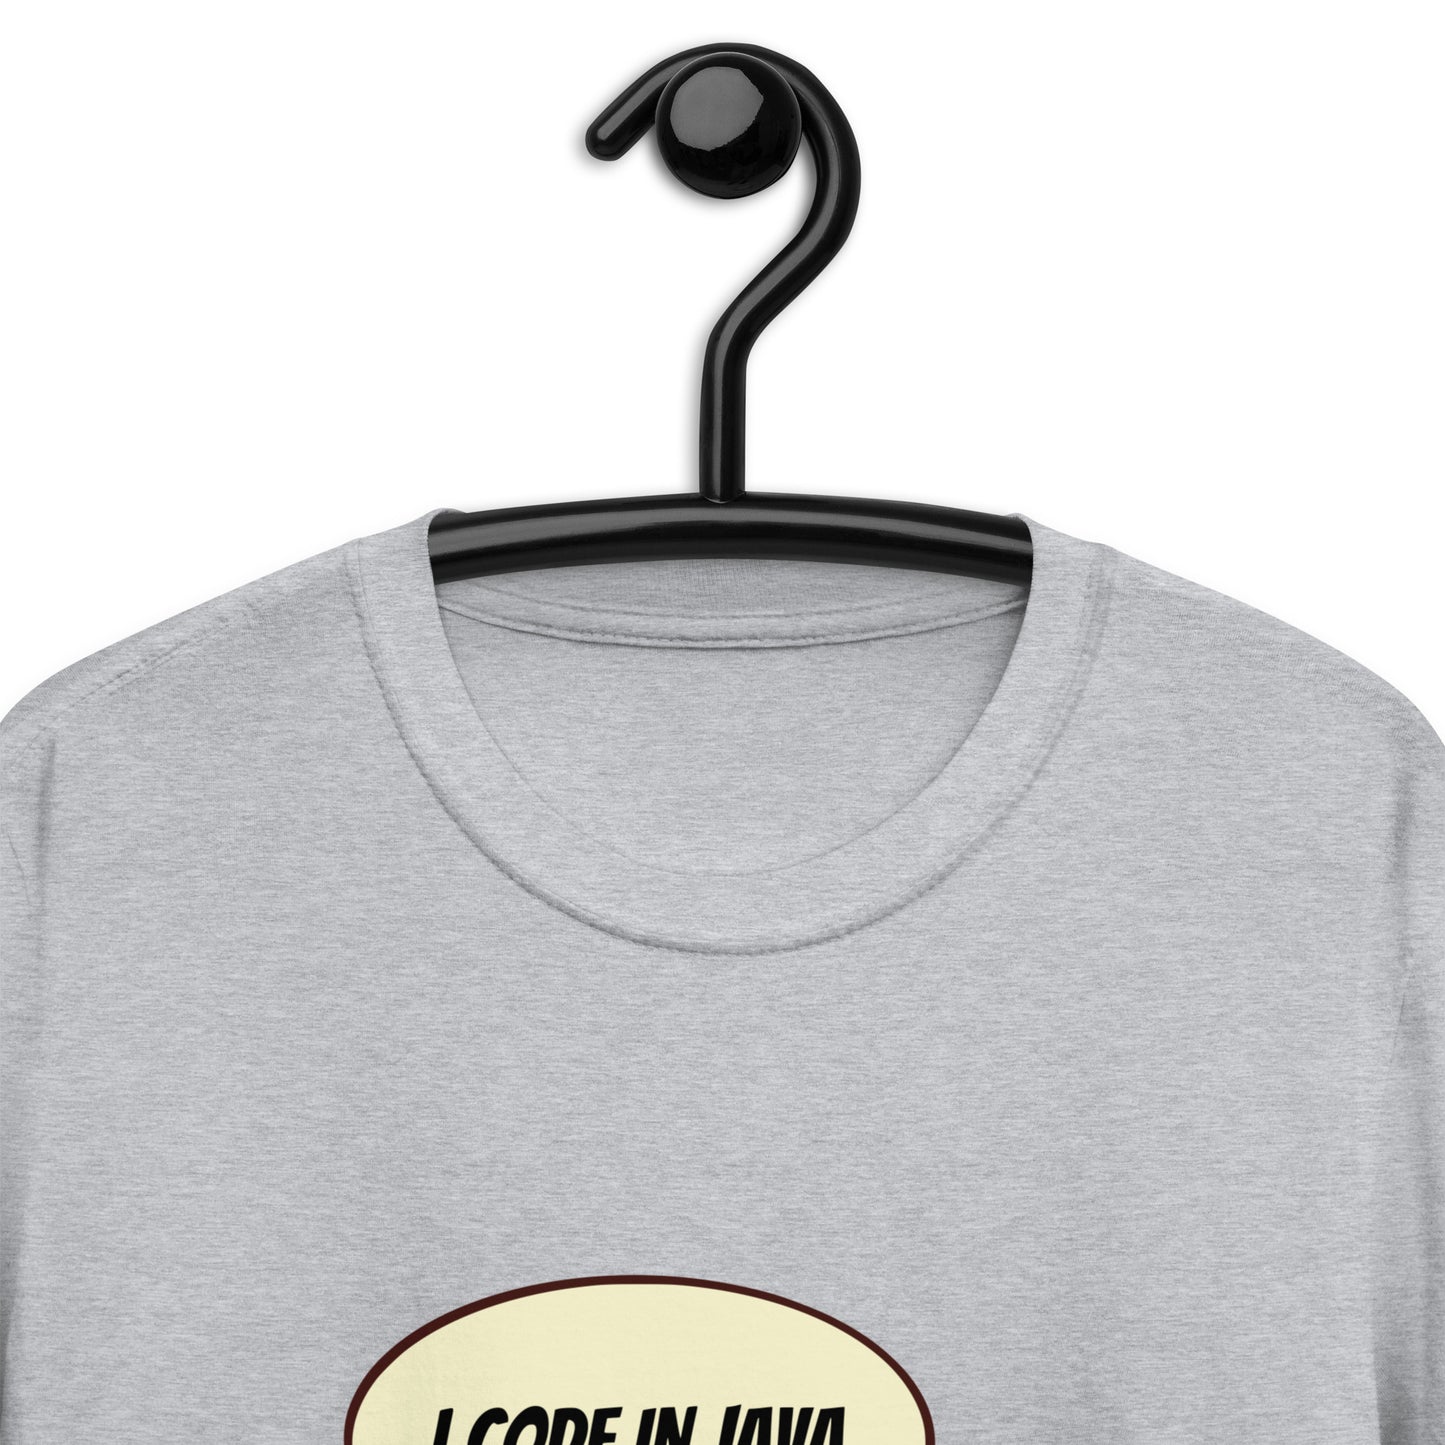 Java t-shirt - Software developer